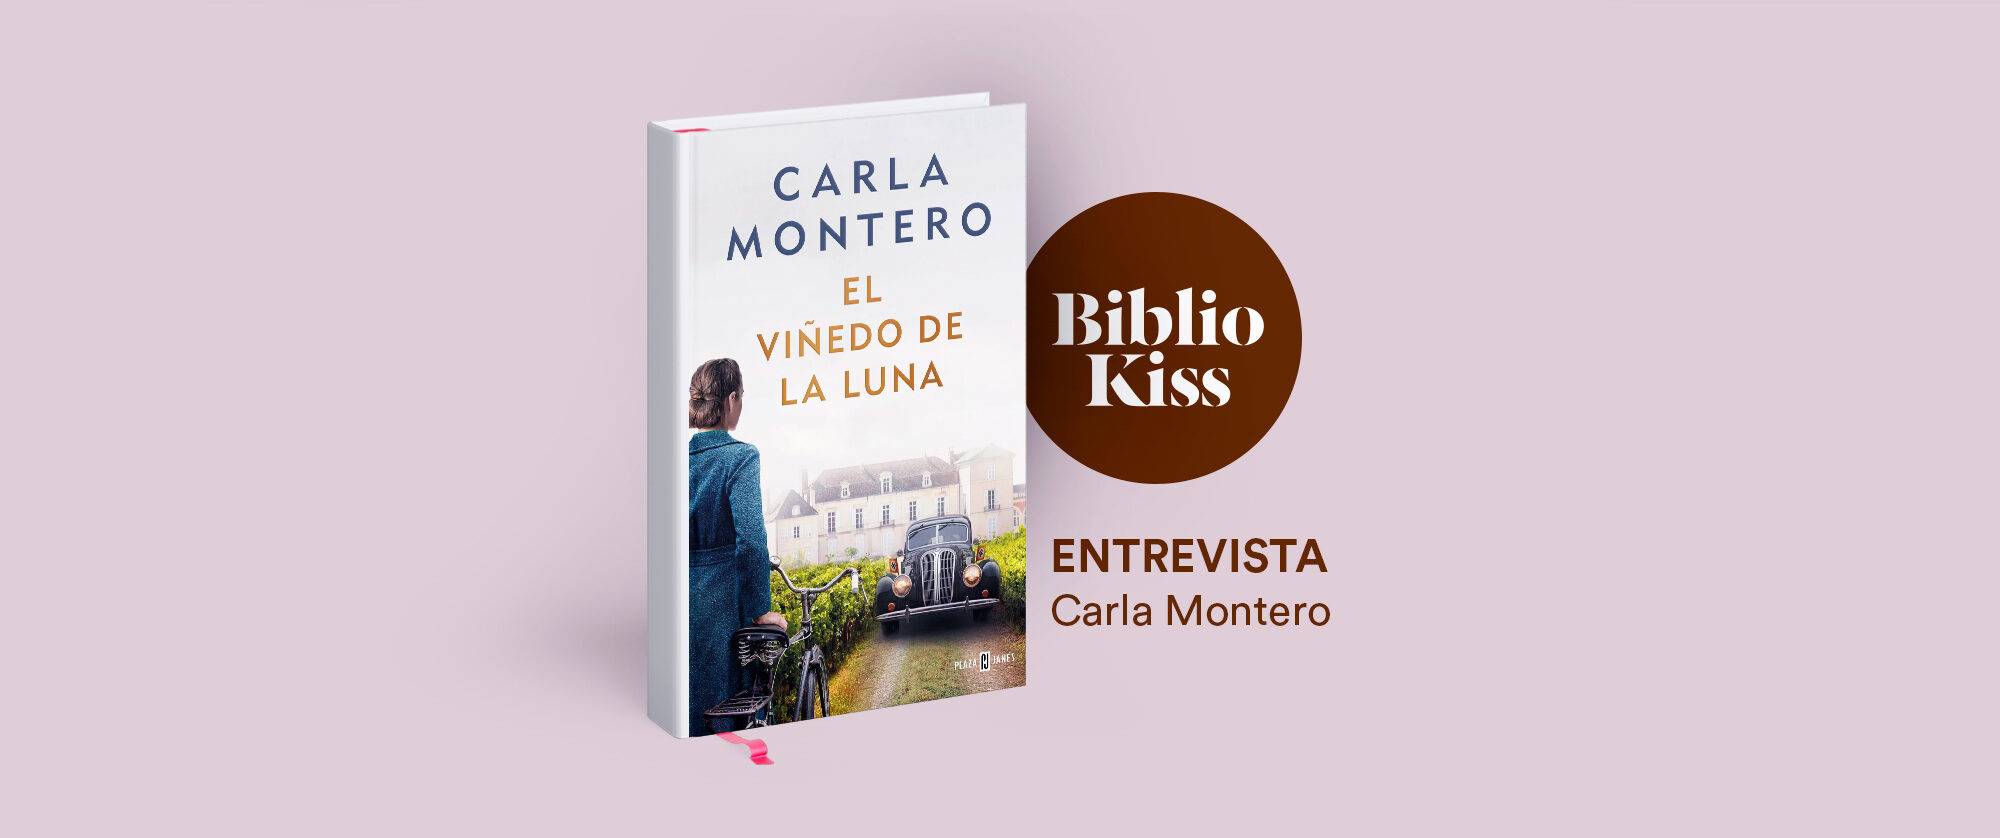 El viñedo de la luna' de Carla Montero 